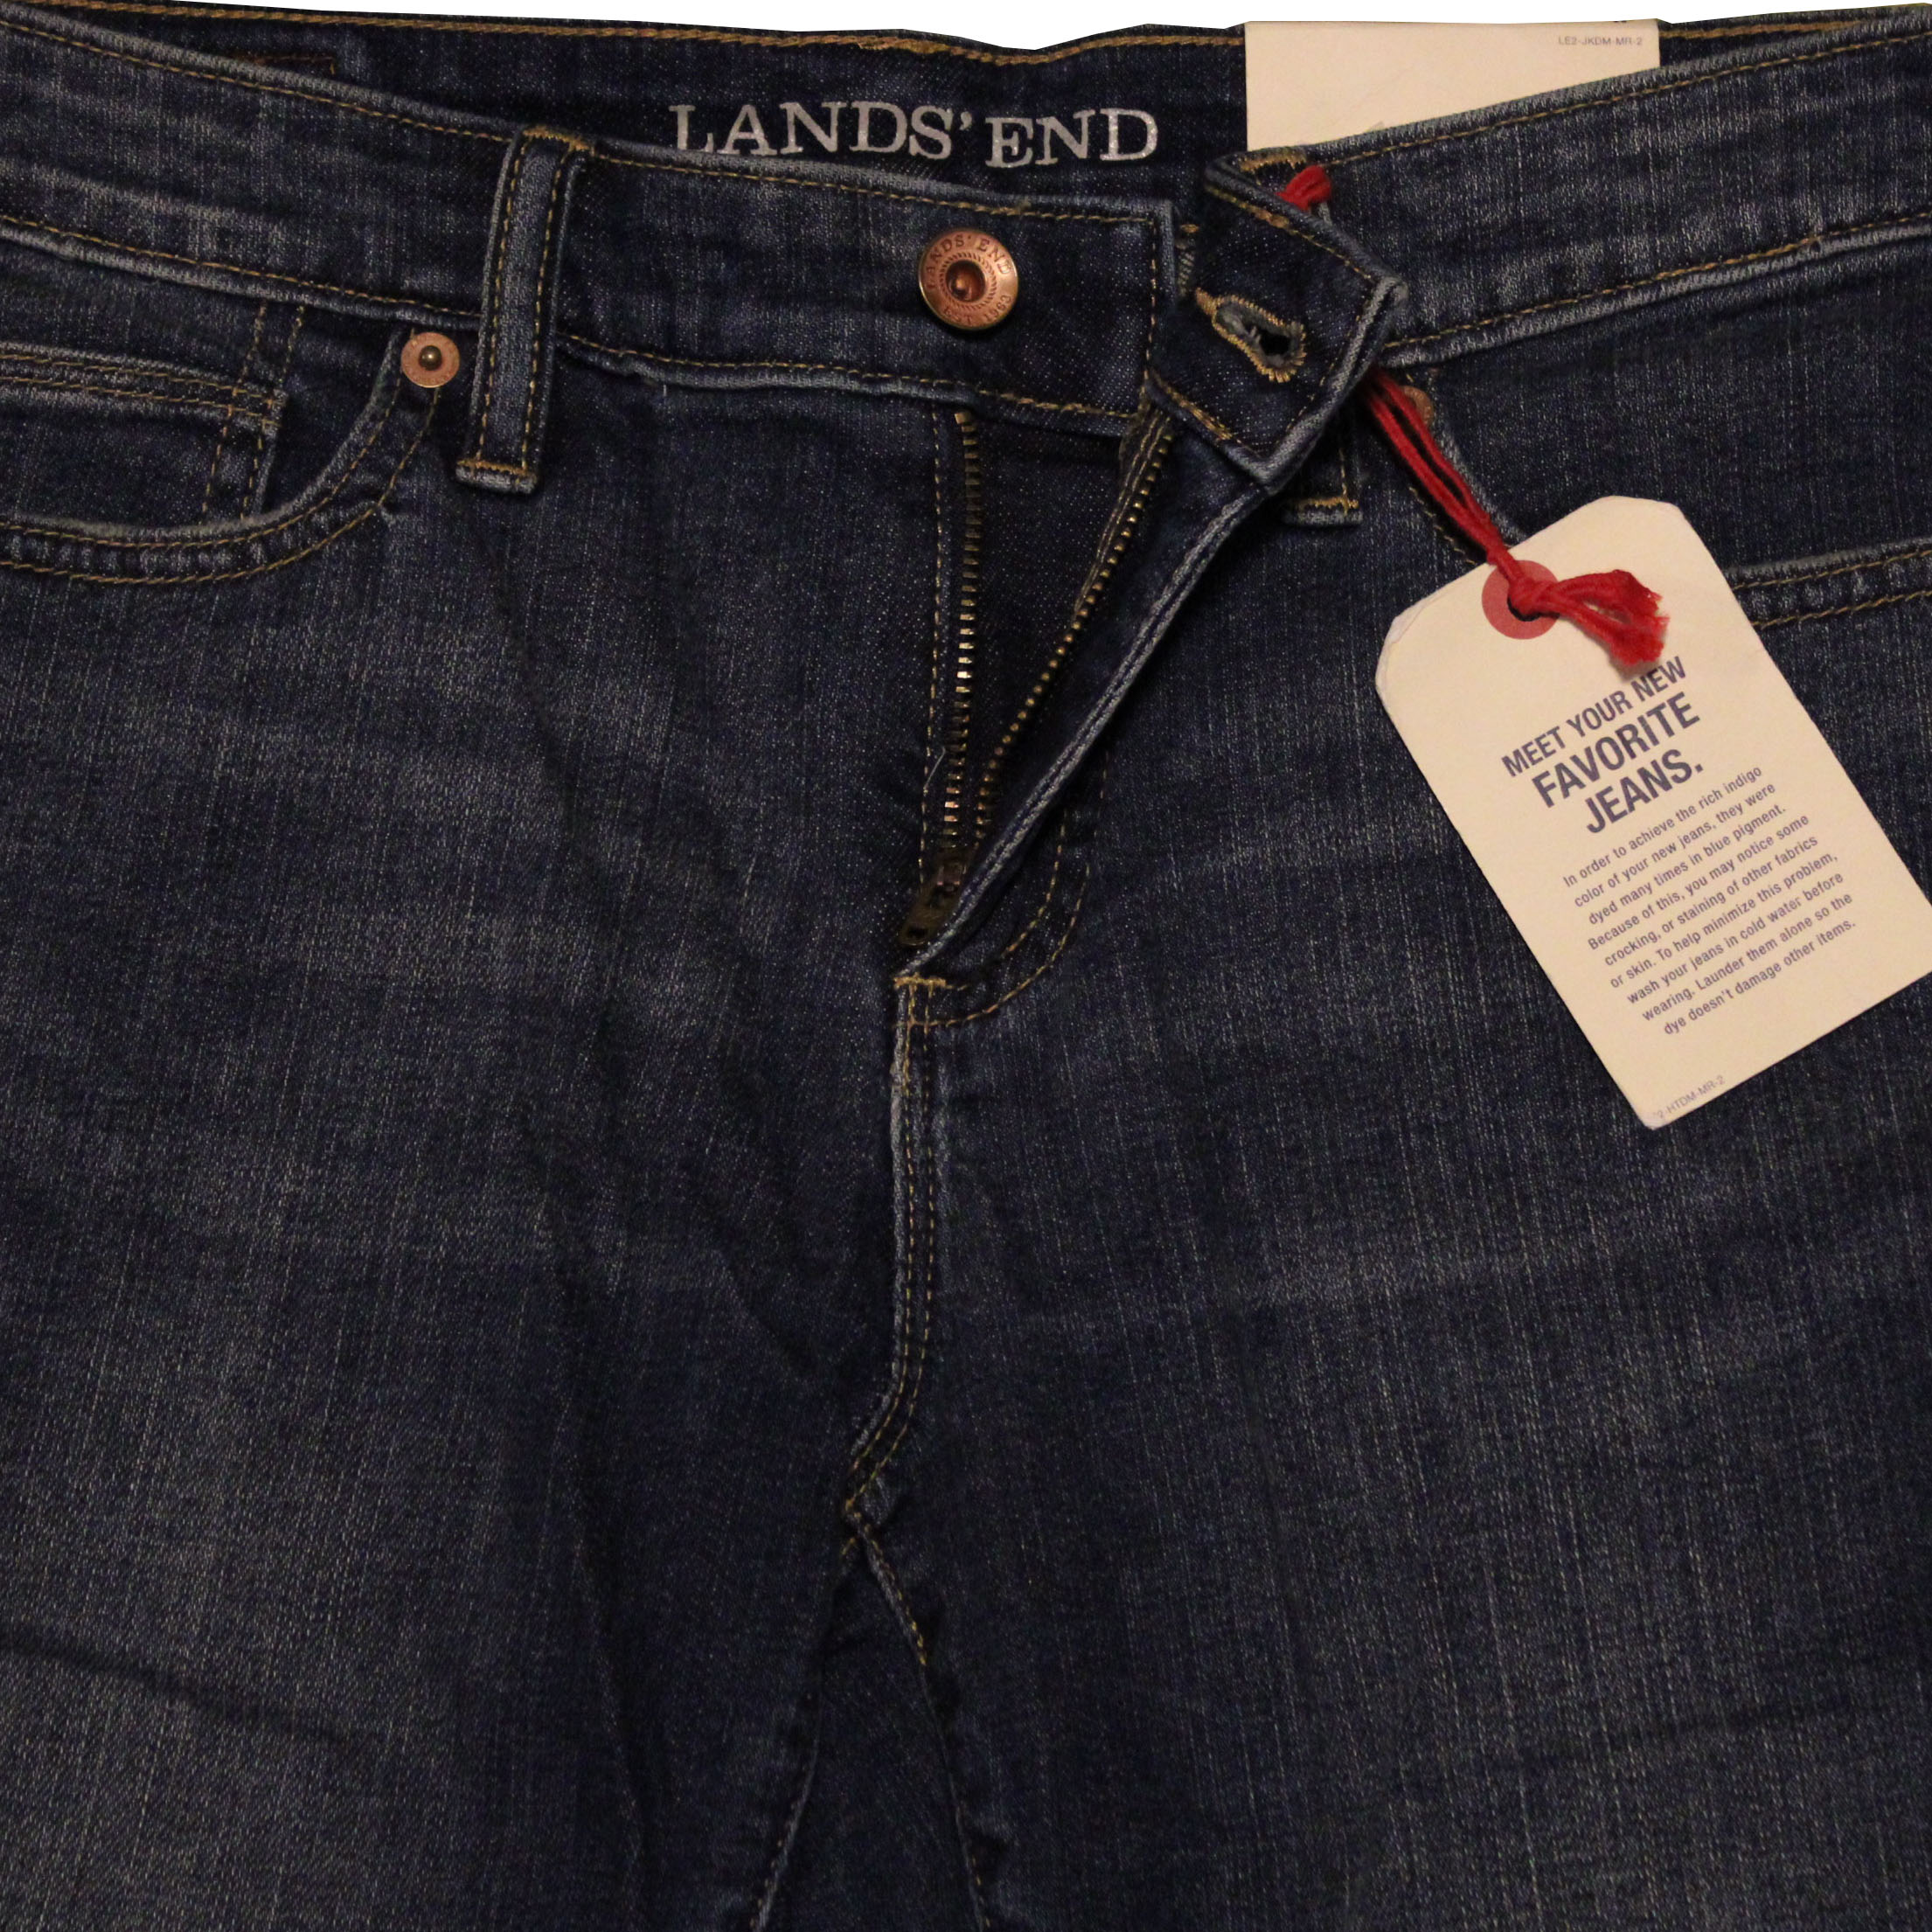 Lands' End Lands End Women's Size 12 Petite, Crop Jeans Dark Indigo Wash Denim